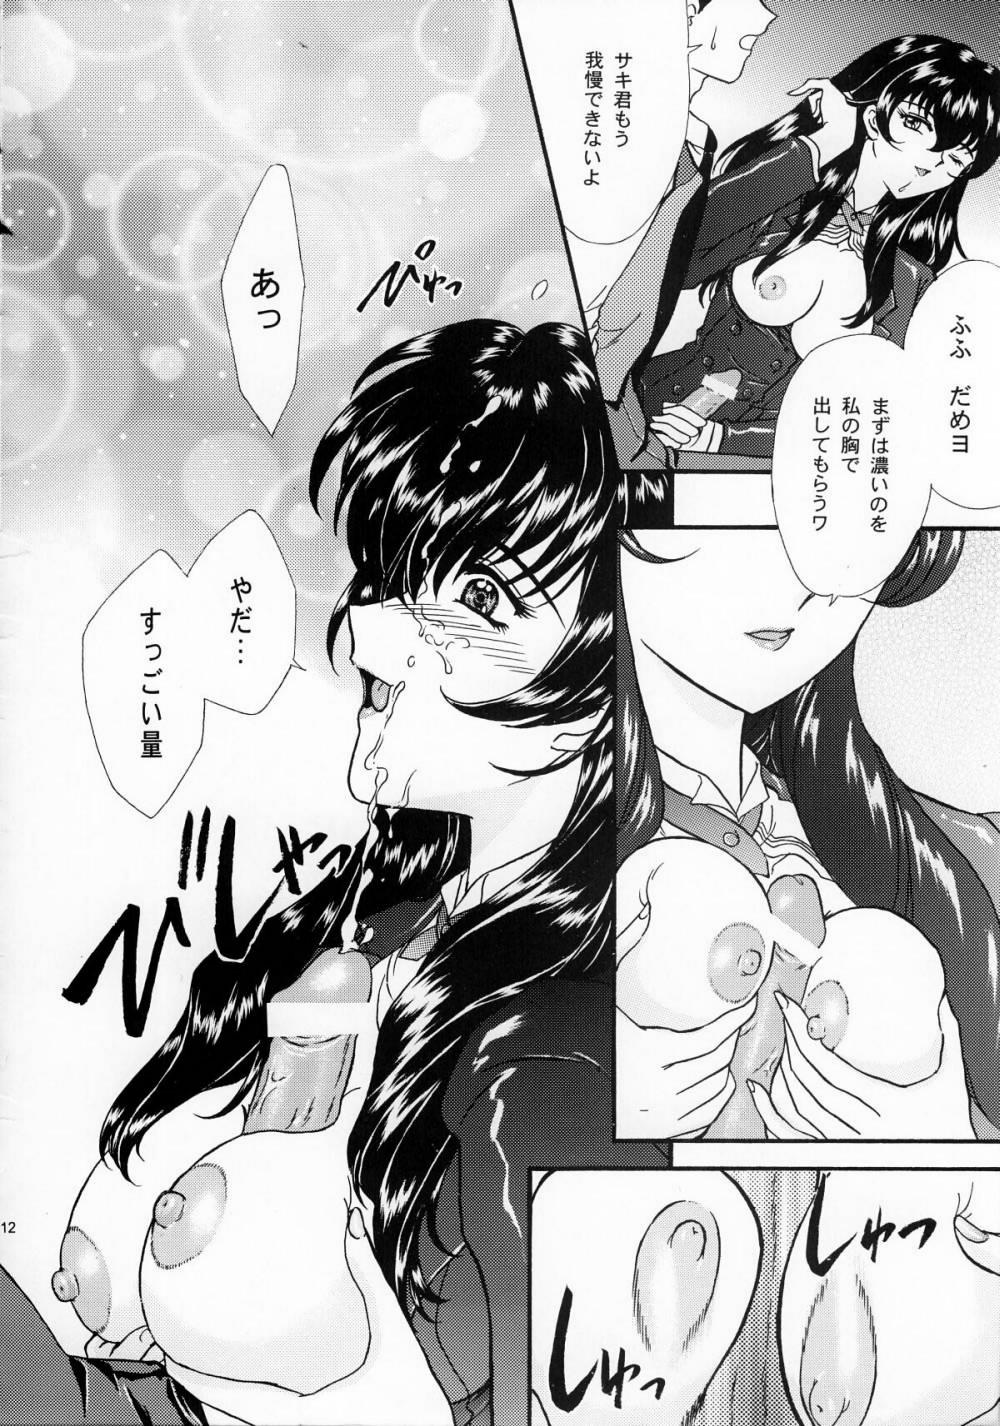 Teen Porn [TSK] Mai Hime ~Karen~ 1 Ichigo Ichie (Sakura Wars) - Sakura taisen Indo - Page 11